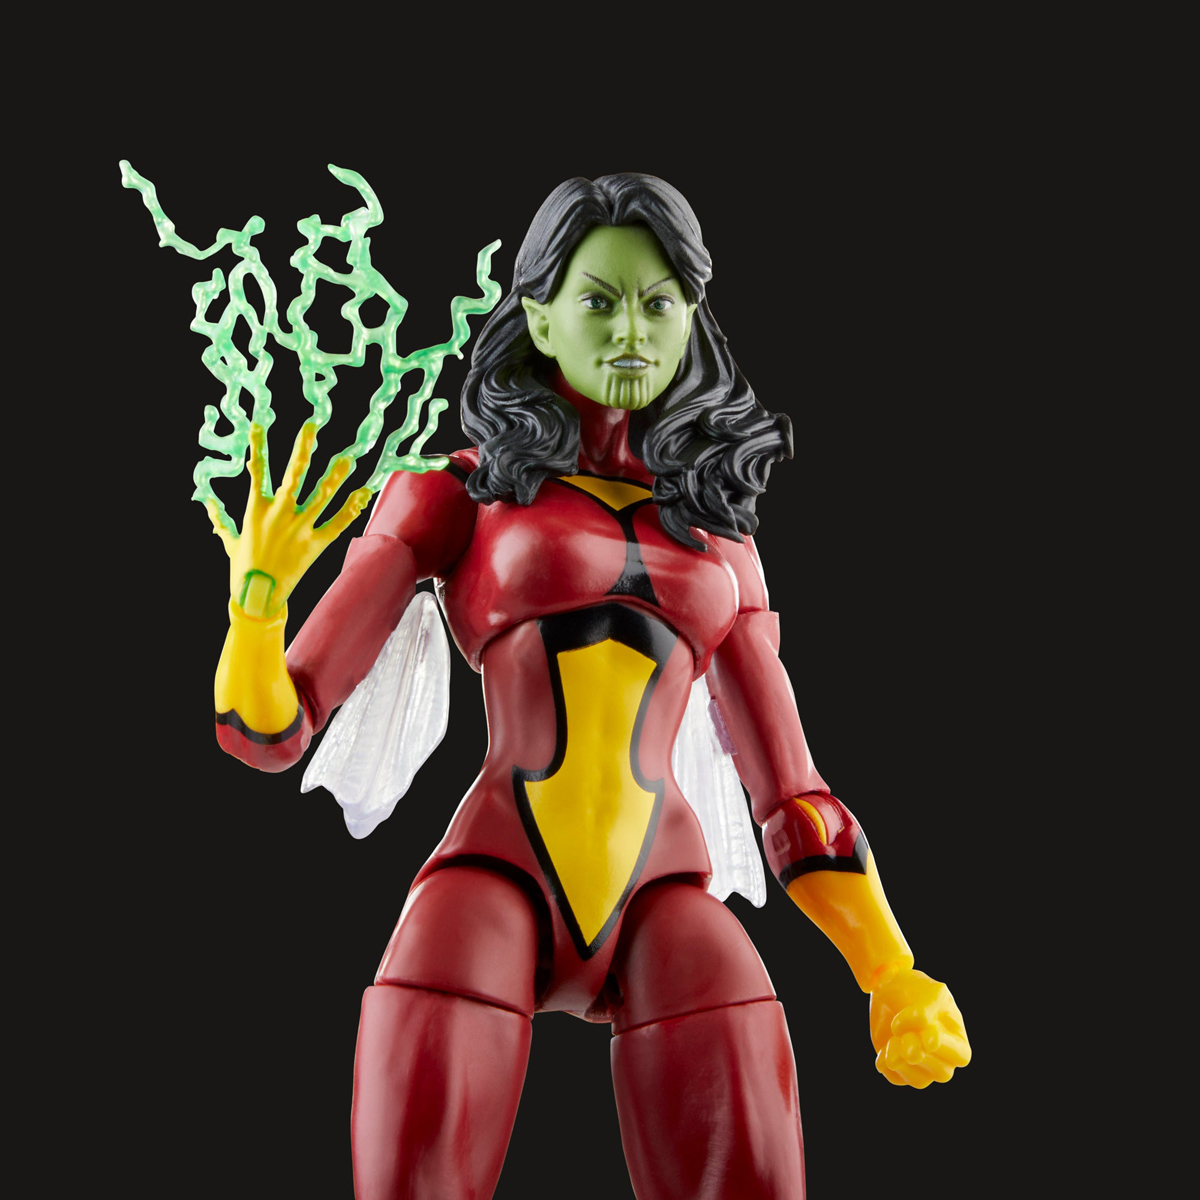 Marvel-Legends-Skrull-Queen-and-Super-Skrull-Action-Figures-6